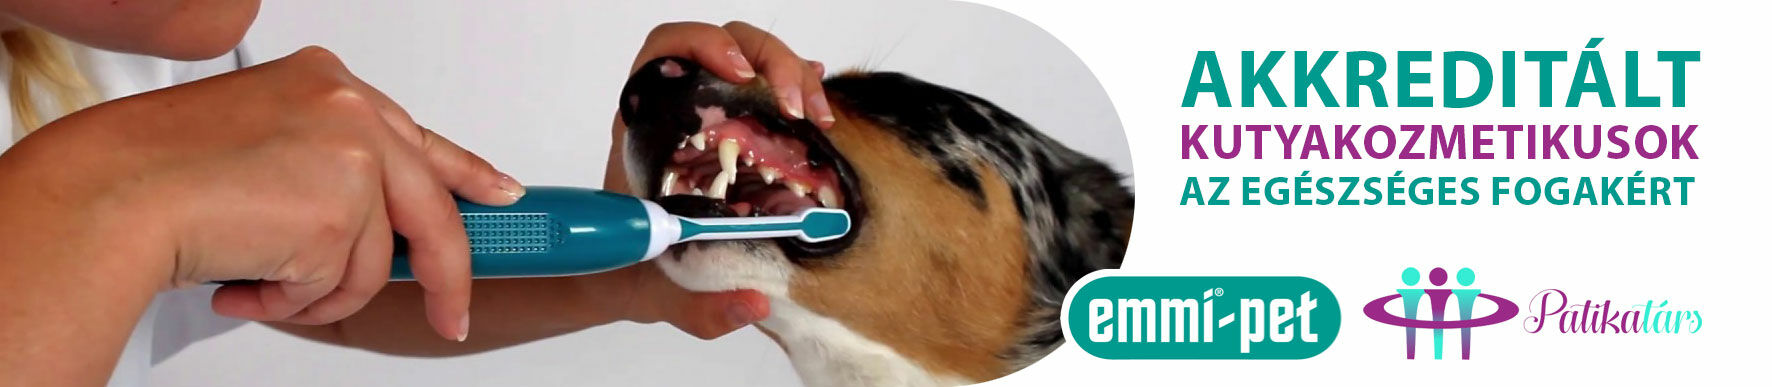 Akkreditált kutyakozmetikusok az egészséges fogakért